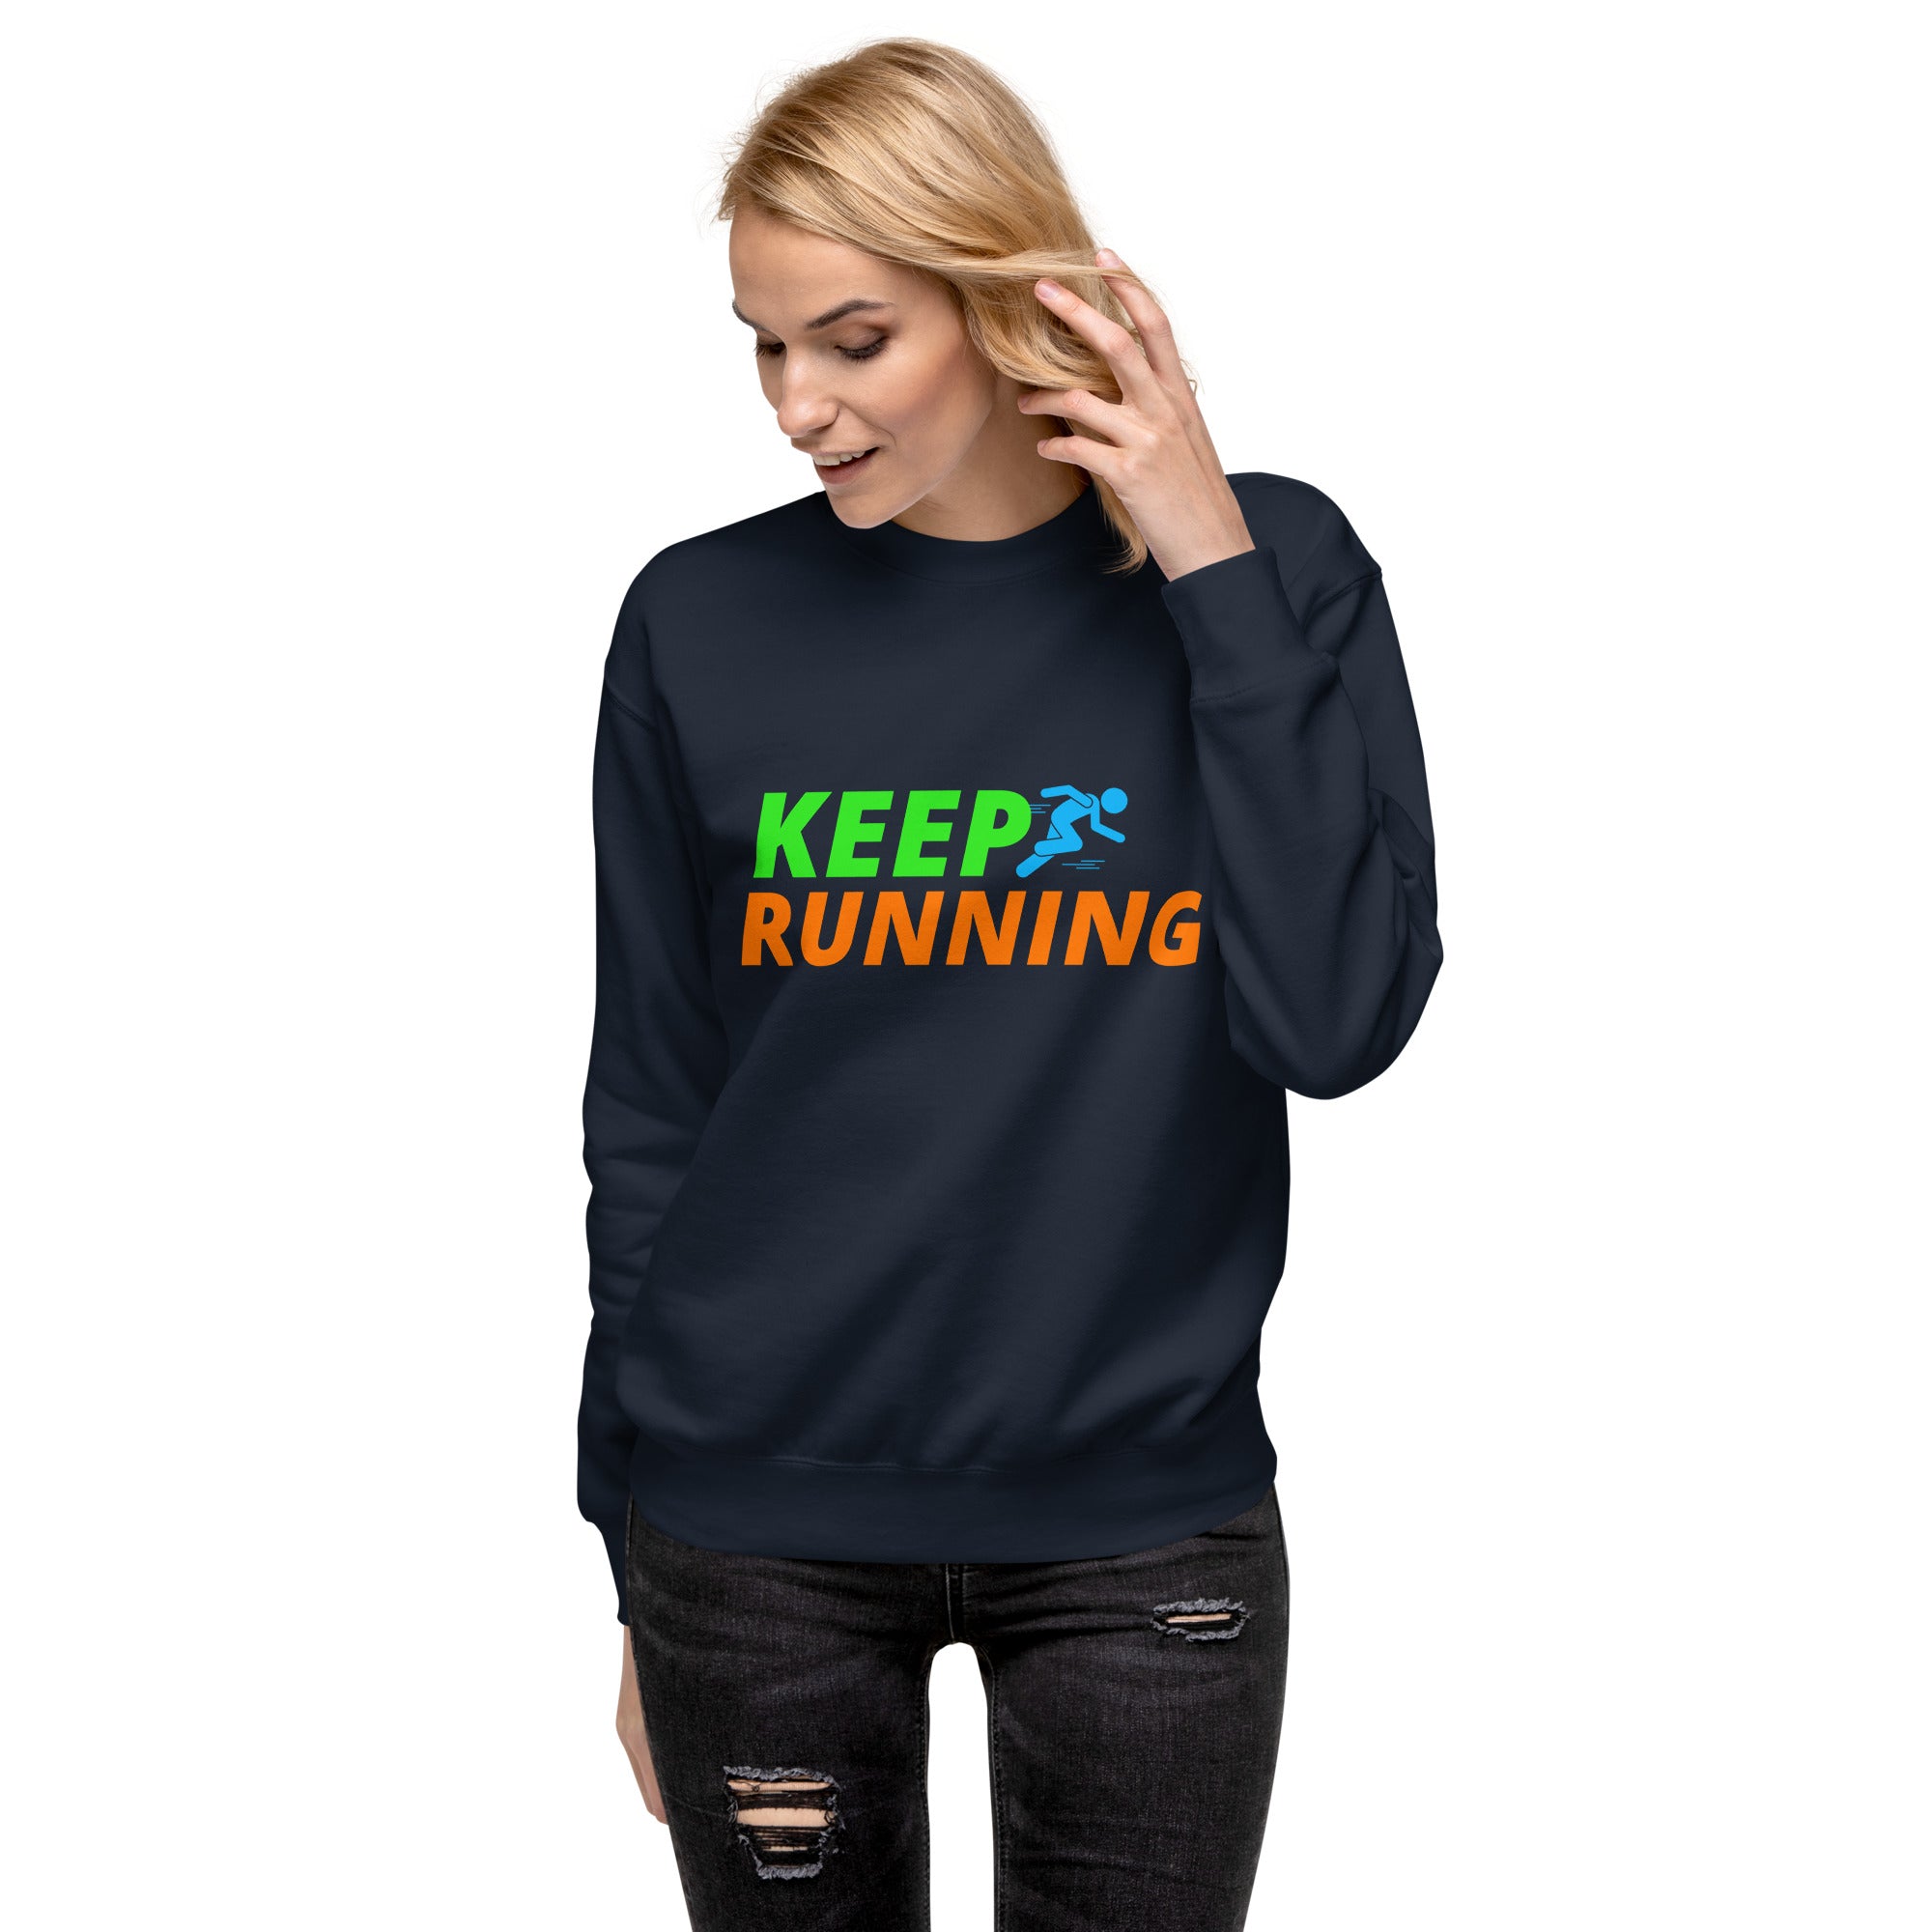 Keep Running Women's Premium Sweatshirt